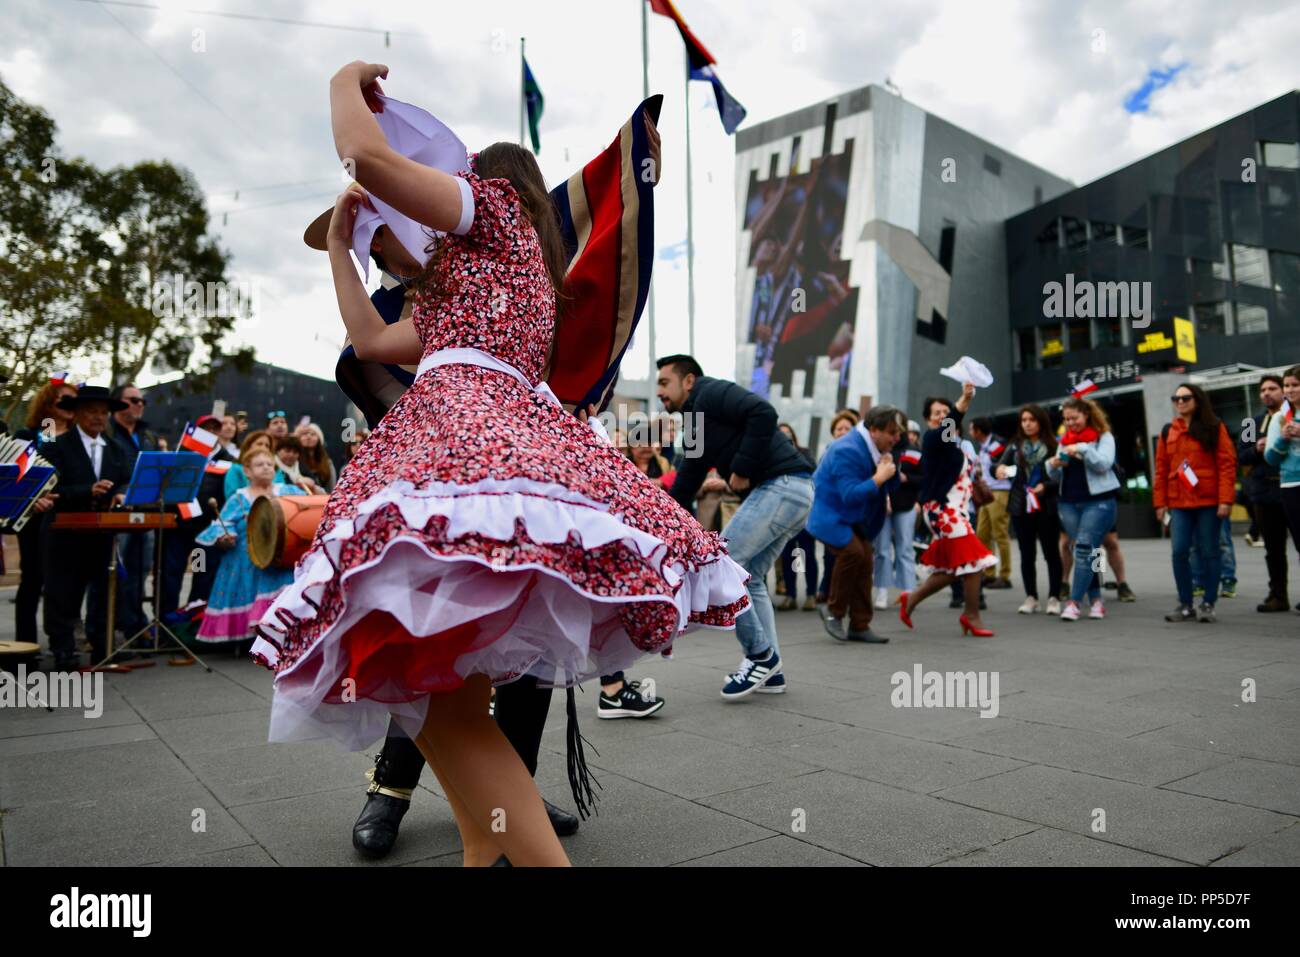 Fiestas Patrias, der Native Land Urlaub, den chilenischen Nationalen Tag Feier am Federation Square in Melbourne, VIC, Australien, 18. September 2018 Stockfoto